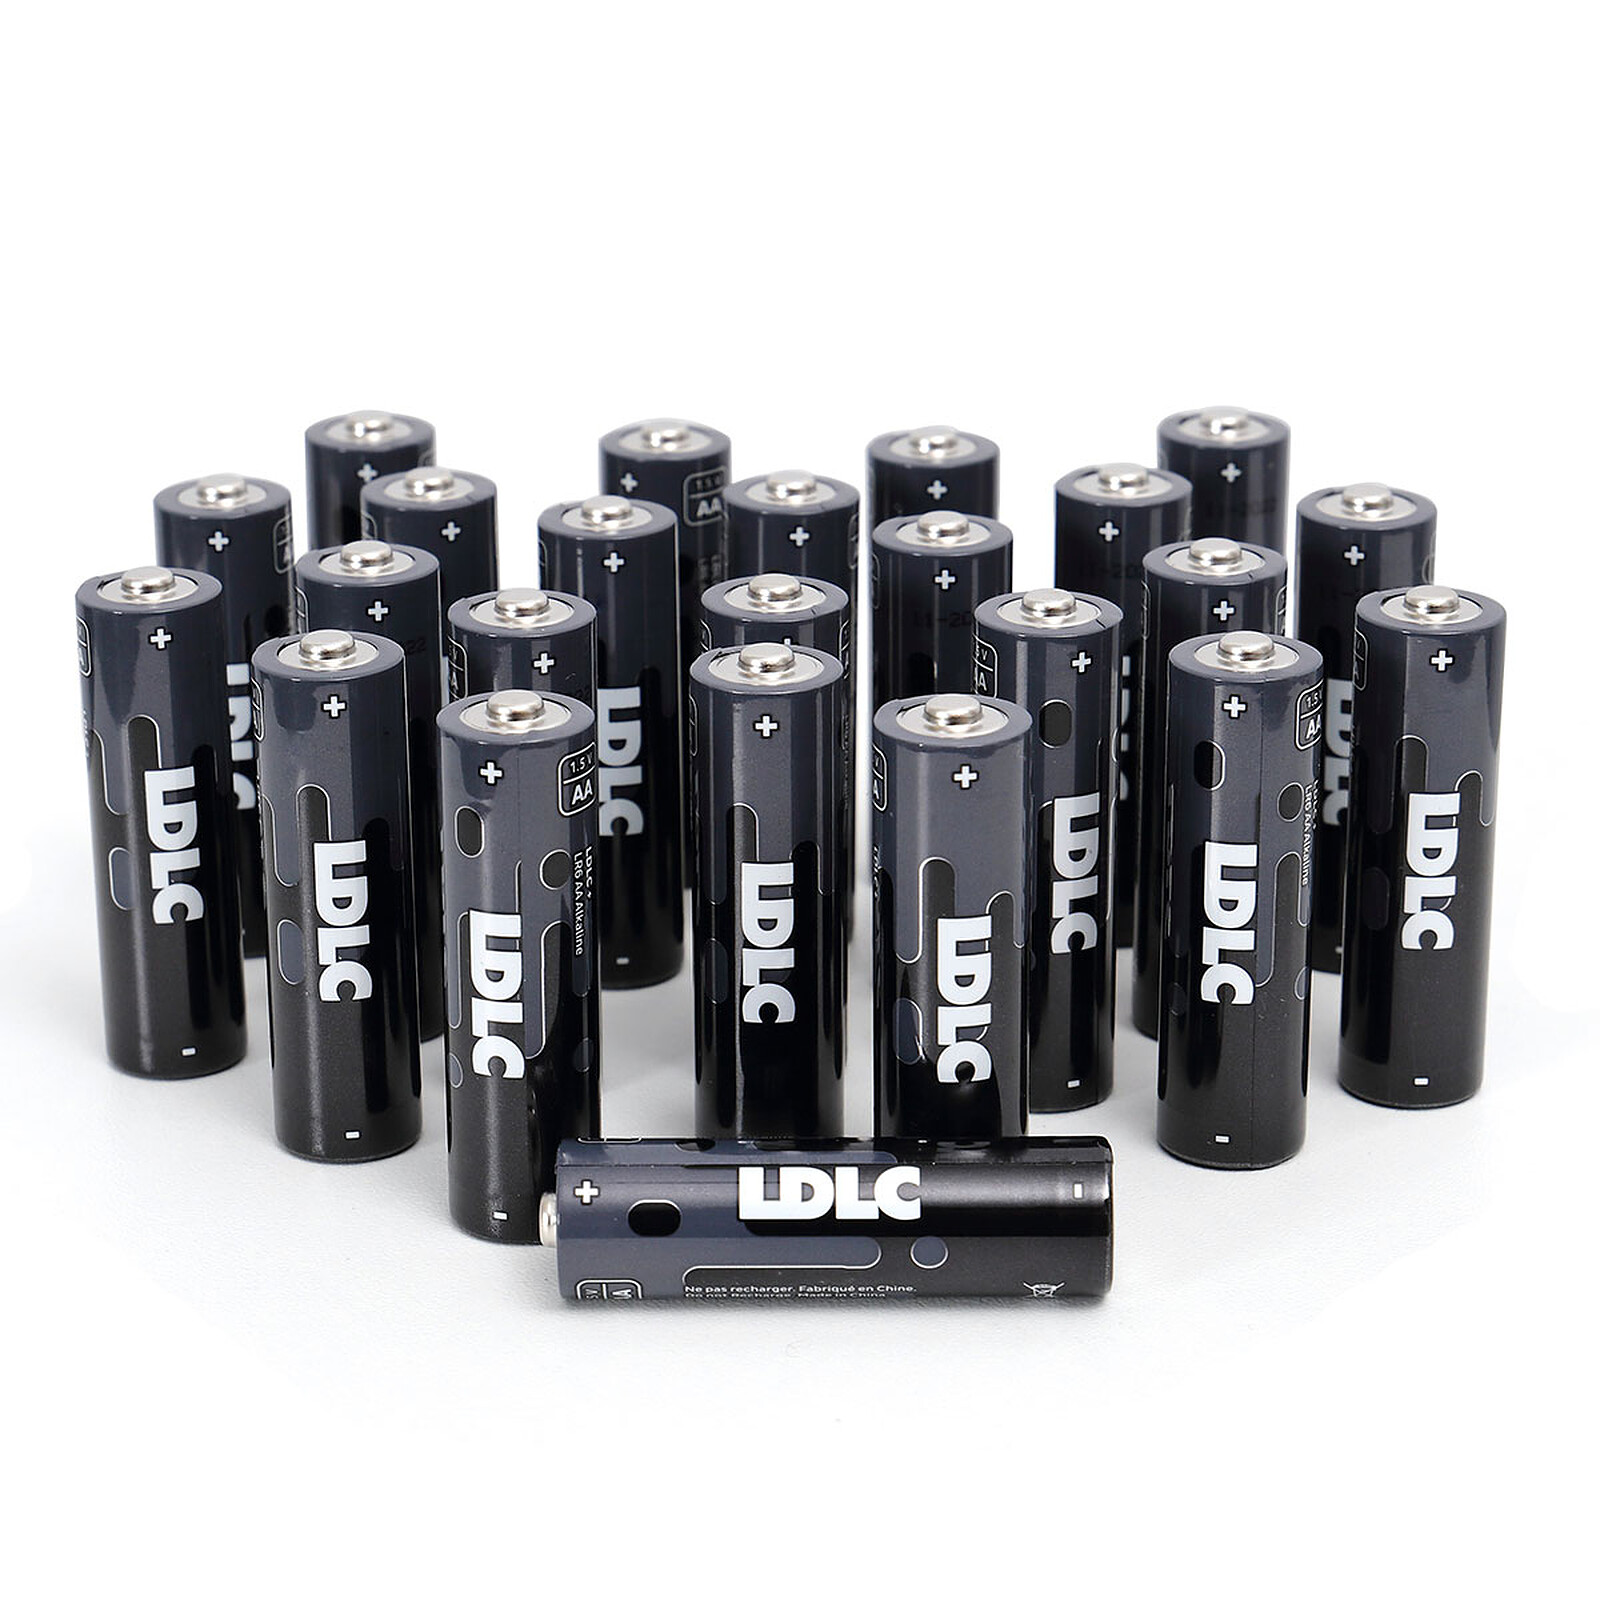 Maxell LR1130 1.5V (par 10) - Pile & chargeur - LDLC